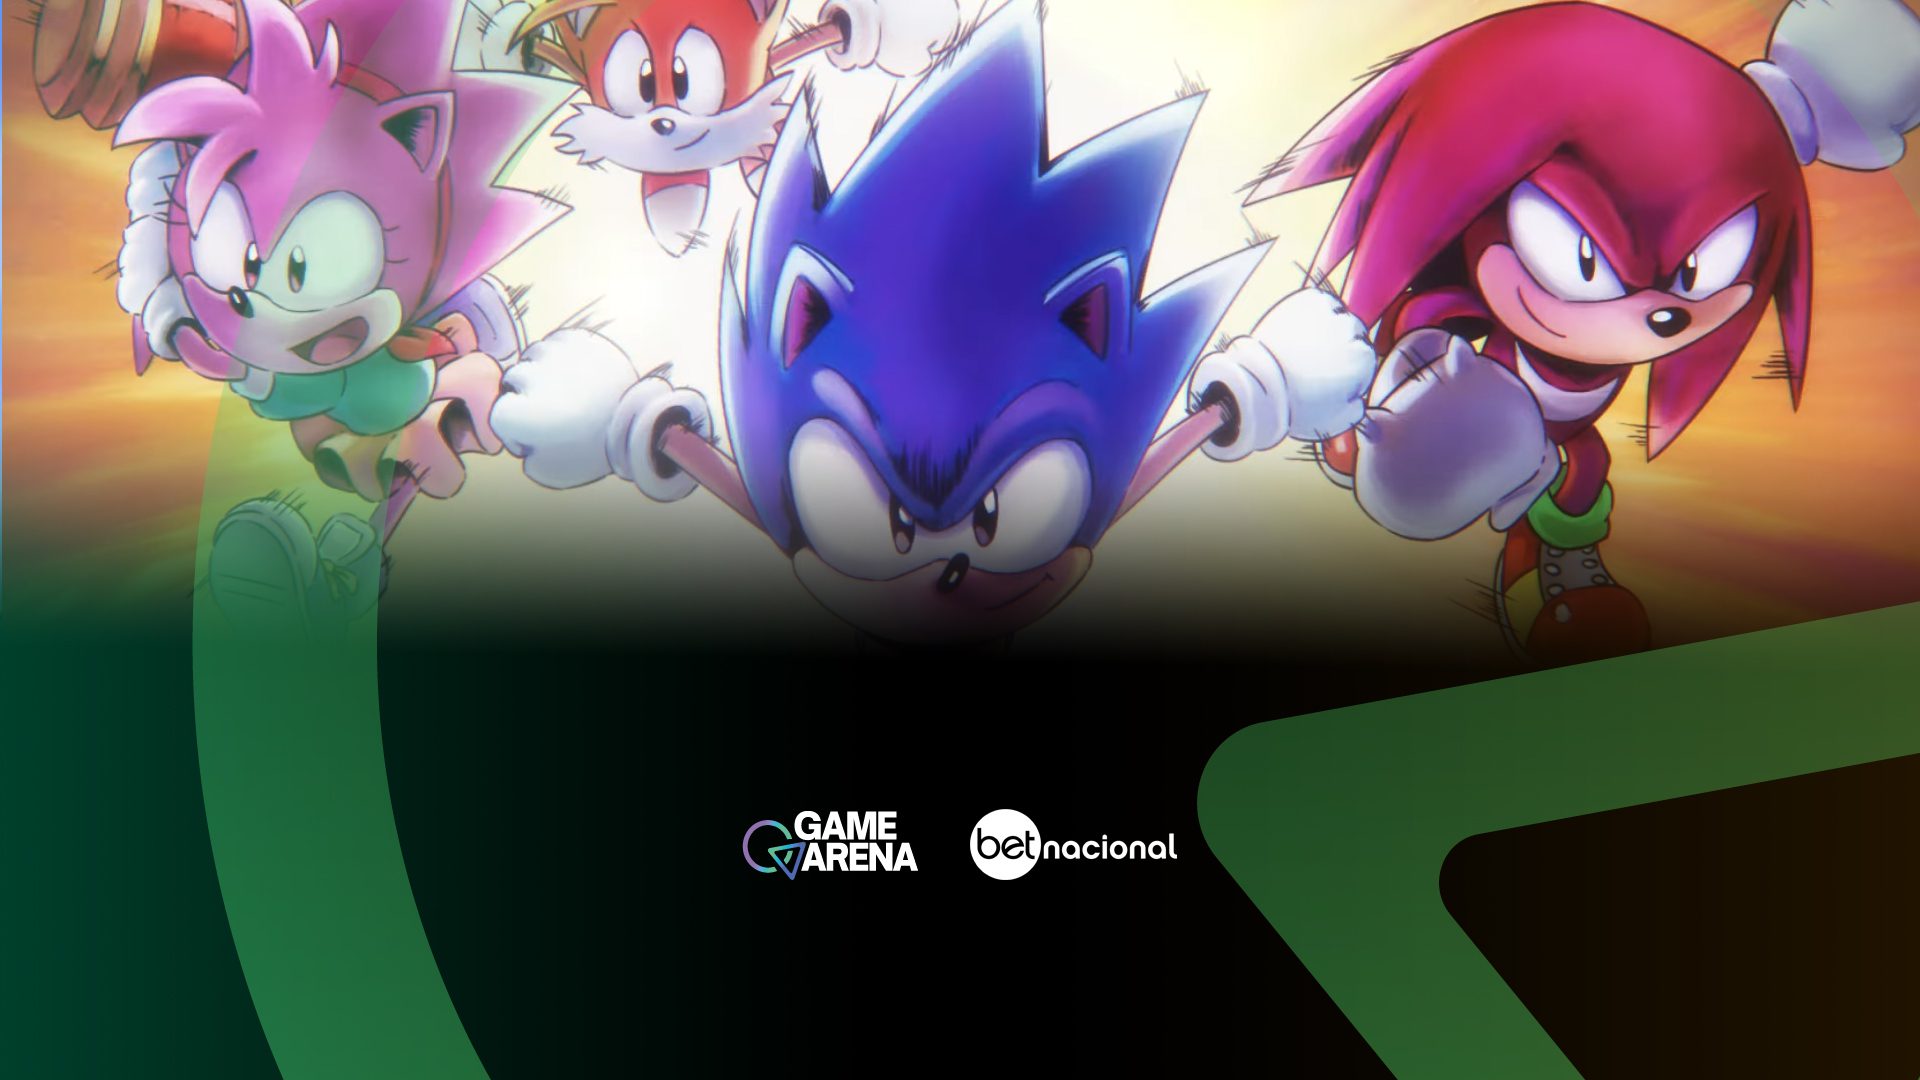 Sonic Mania revela modo de competição